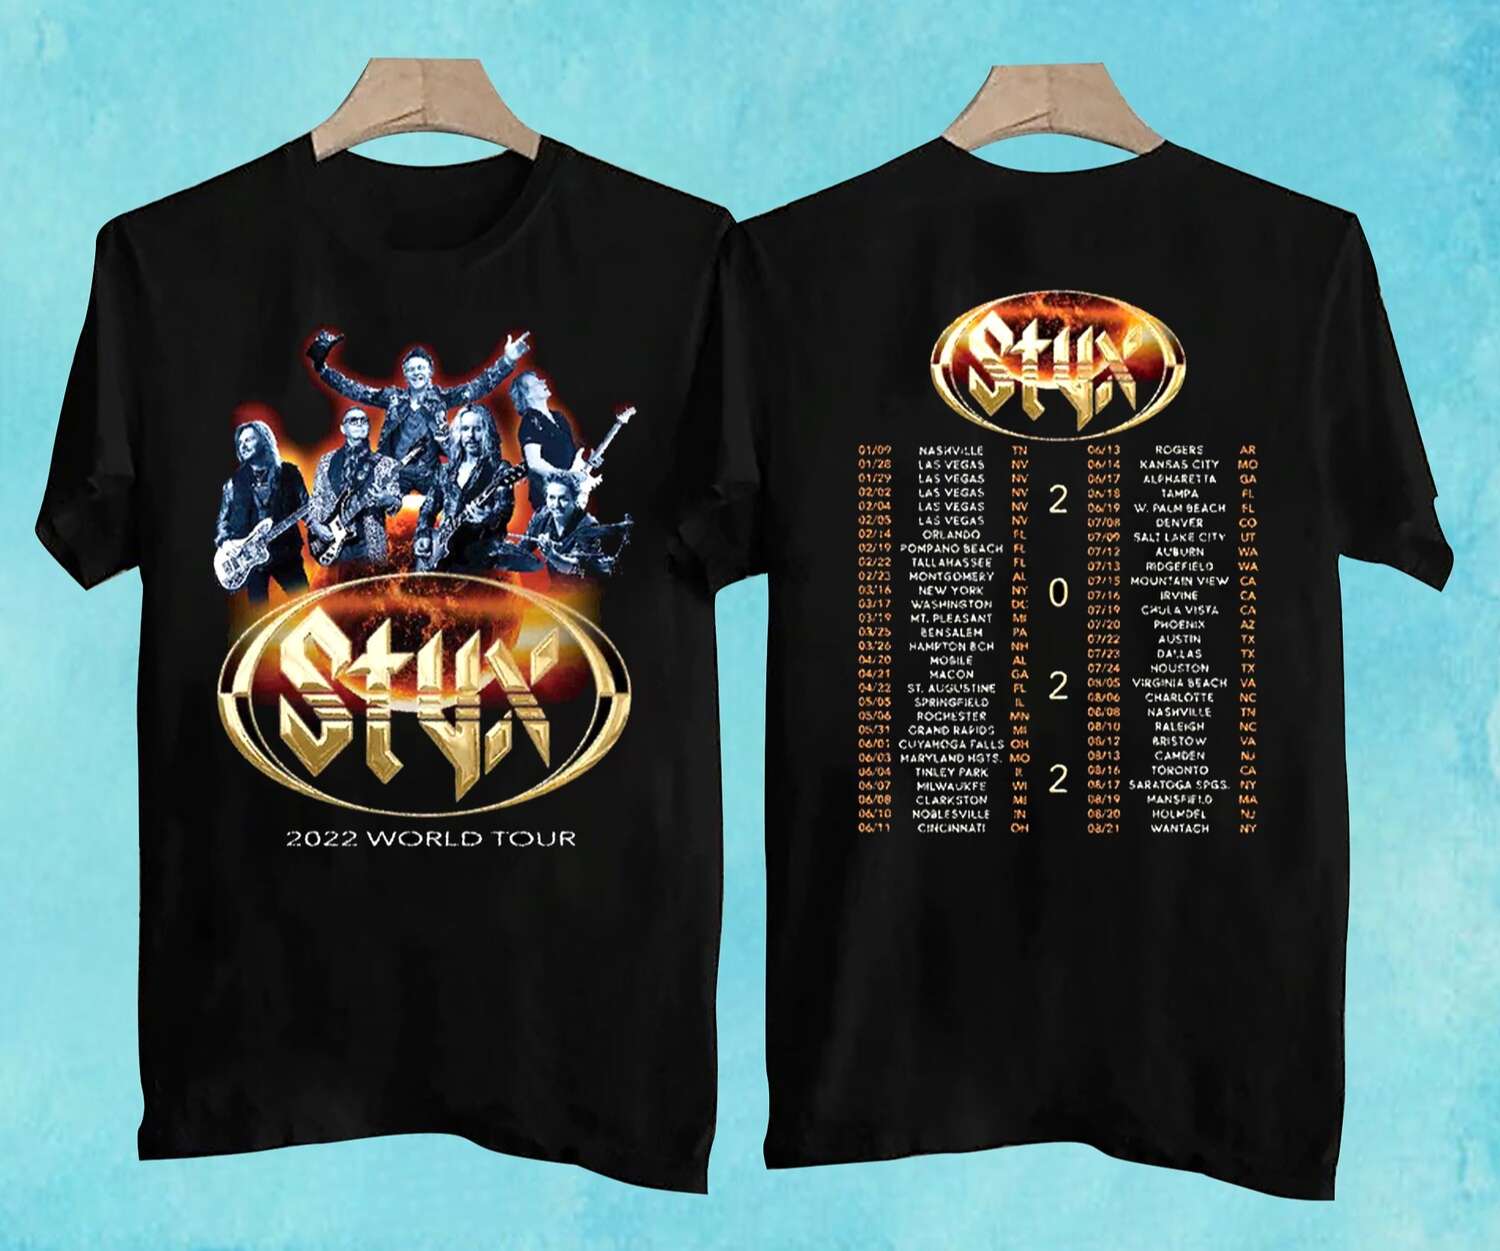 STYX 2022 World Concert Tour T-Shirt